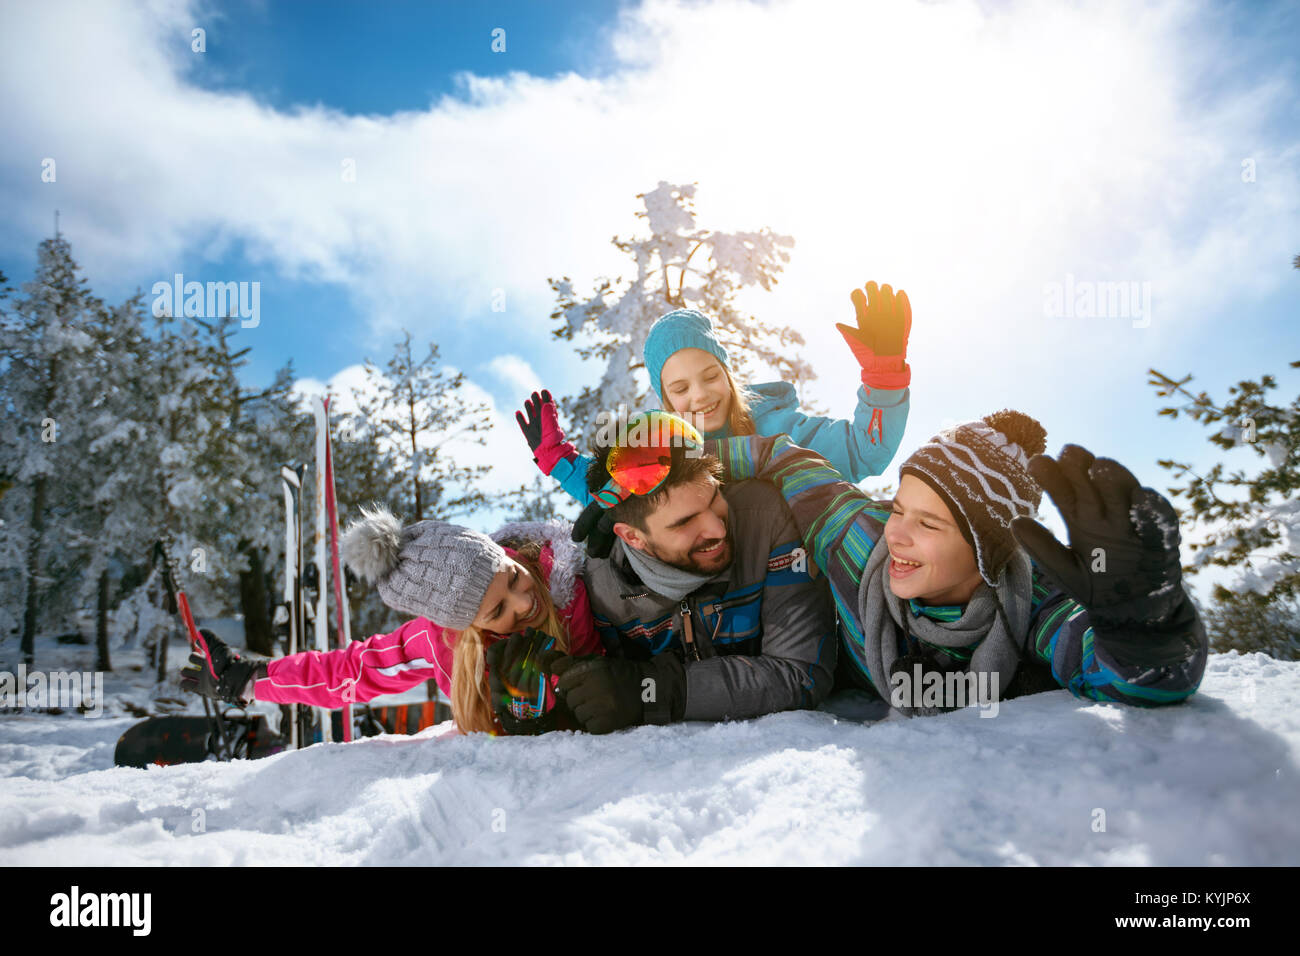 Junge lächelnde Familie in den Winterurlaub - Ski, Schnee, Sonne und viel Spaß Stockfoto